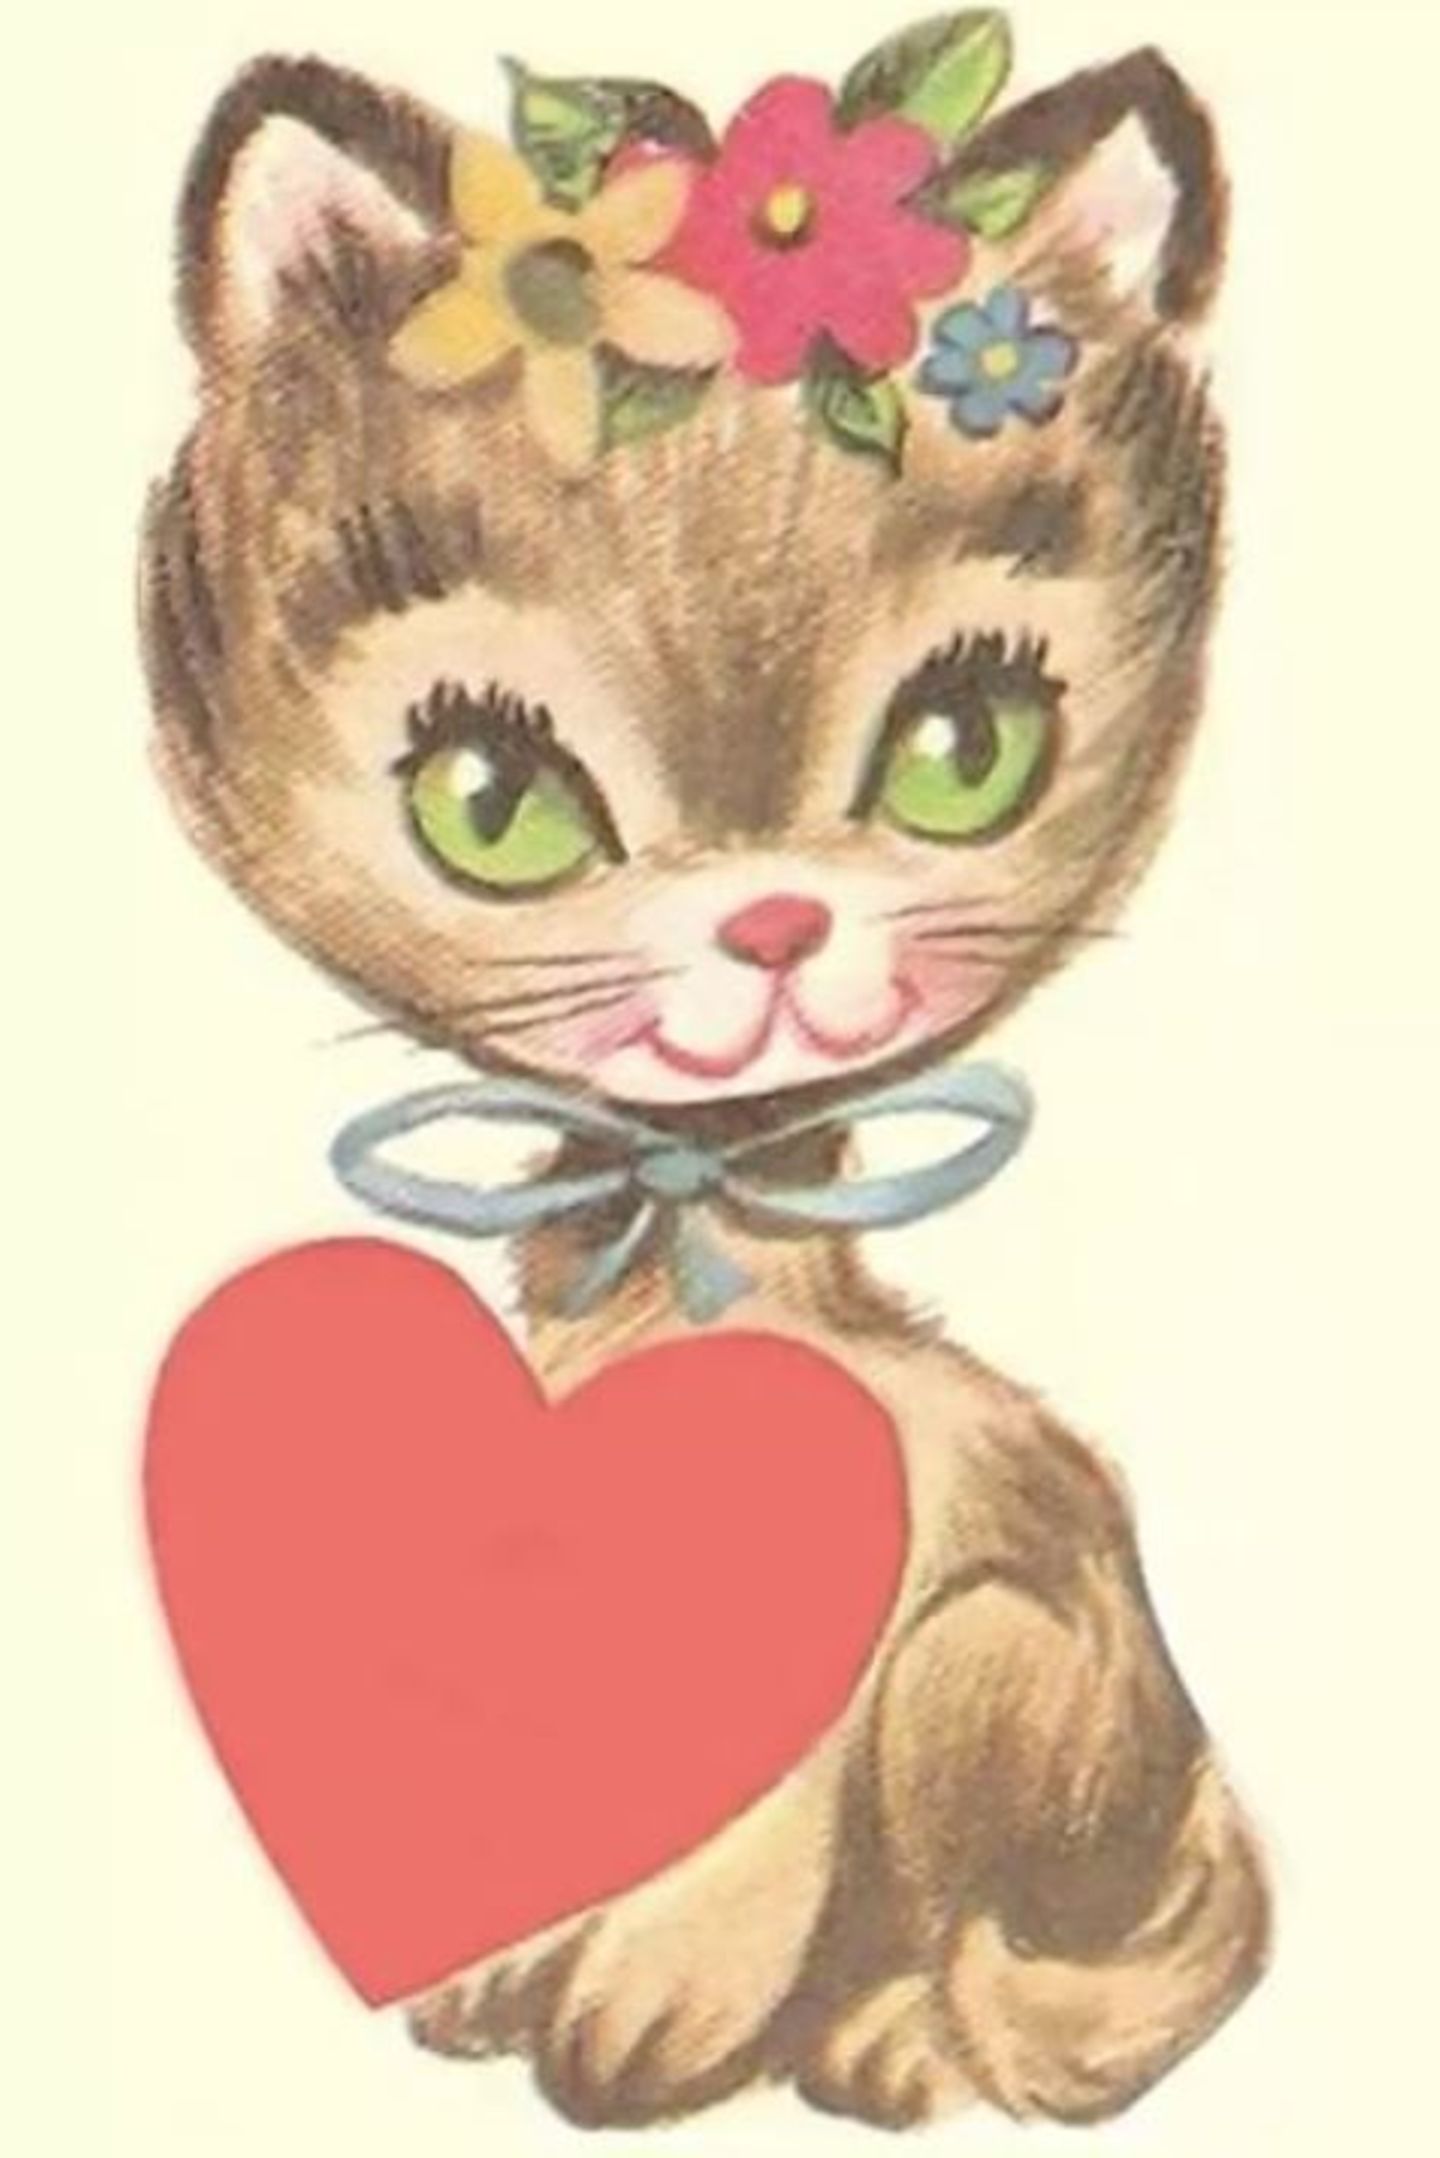 Schnurr: Katy Perry postet eine Kätzchenzeichnung mit Herz.